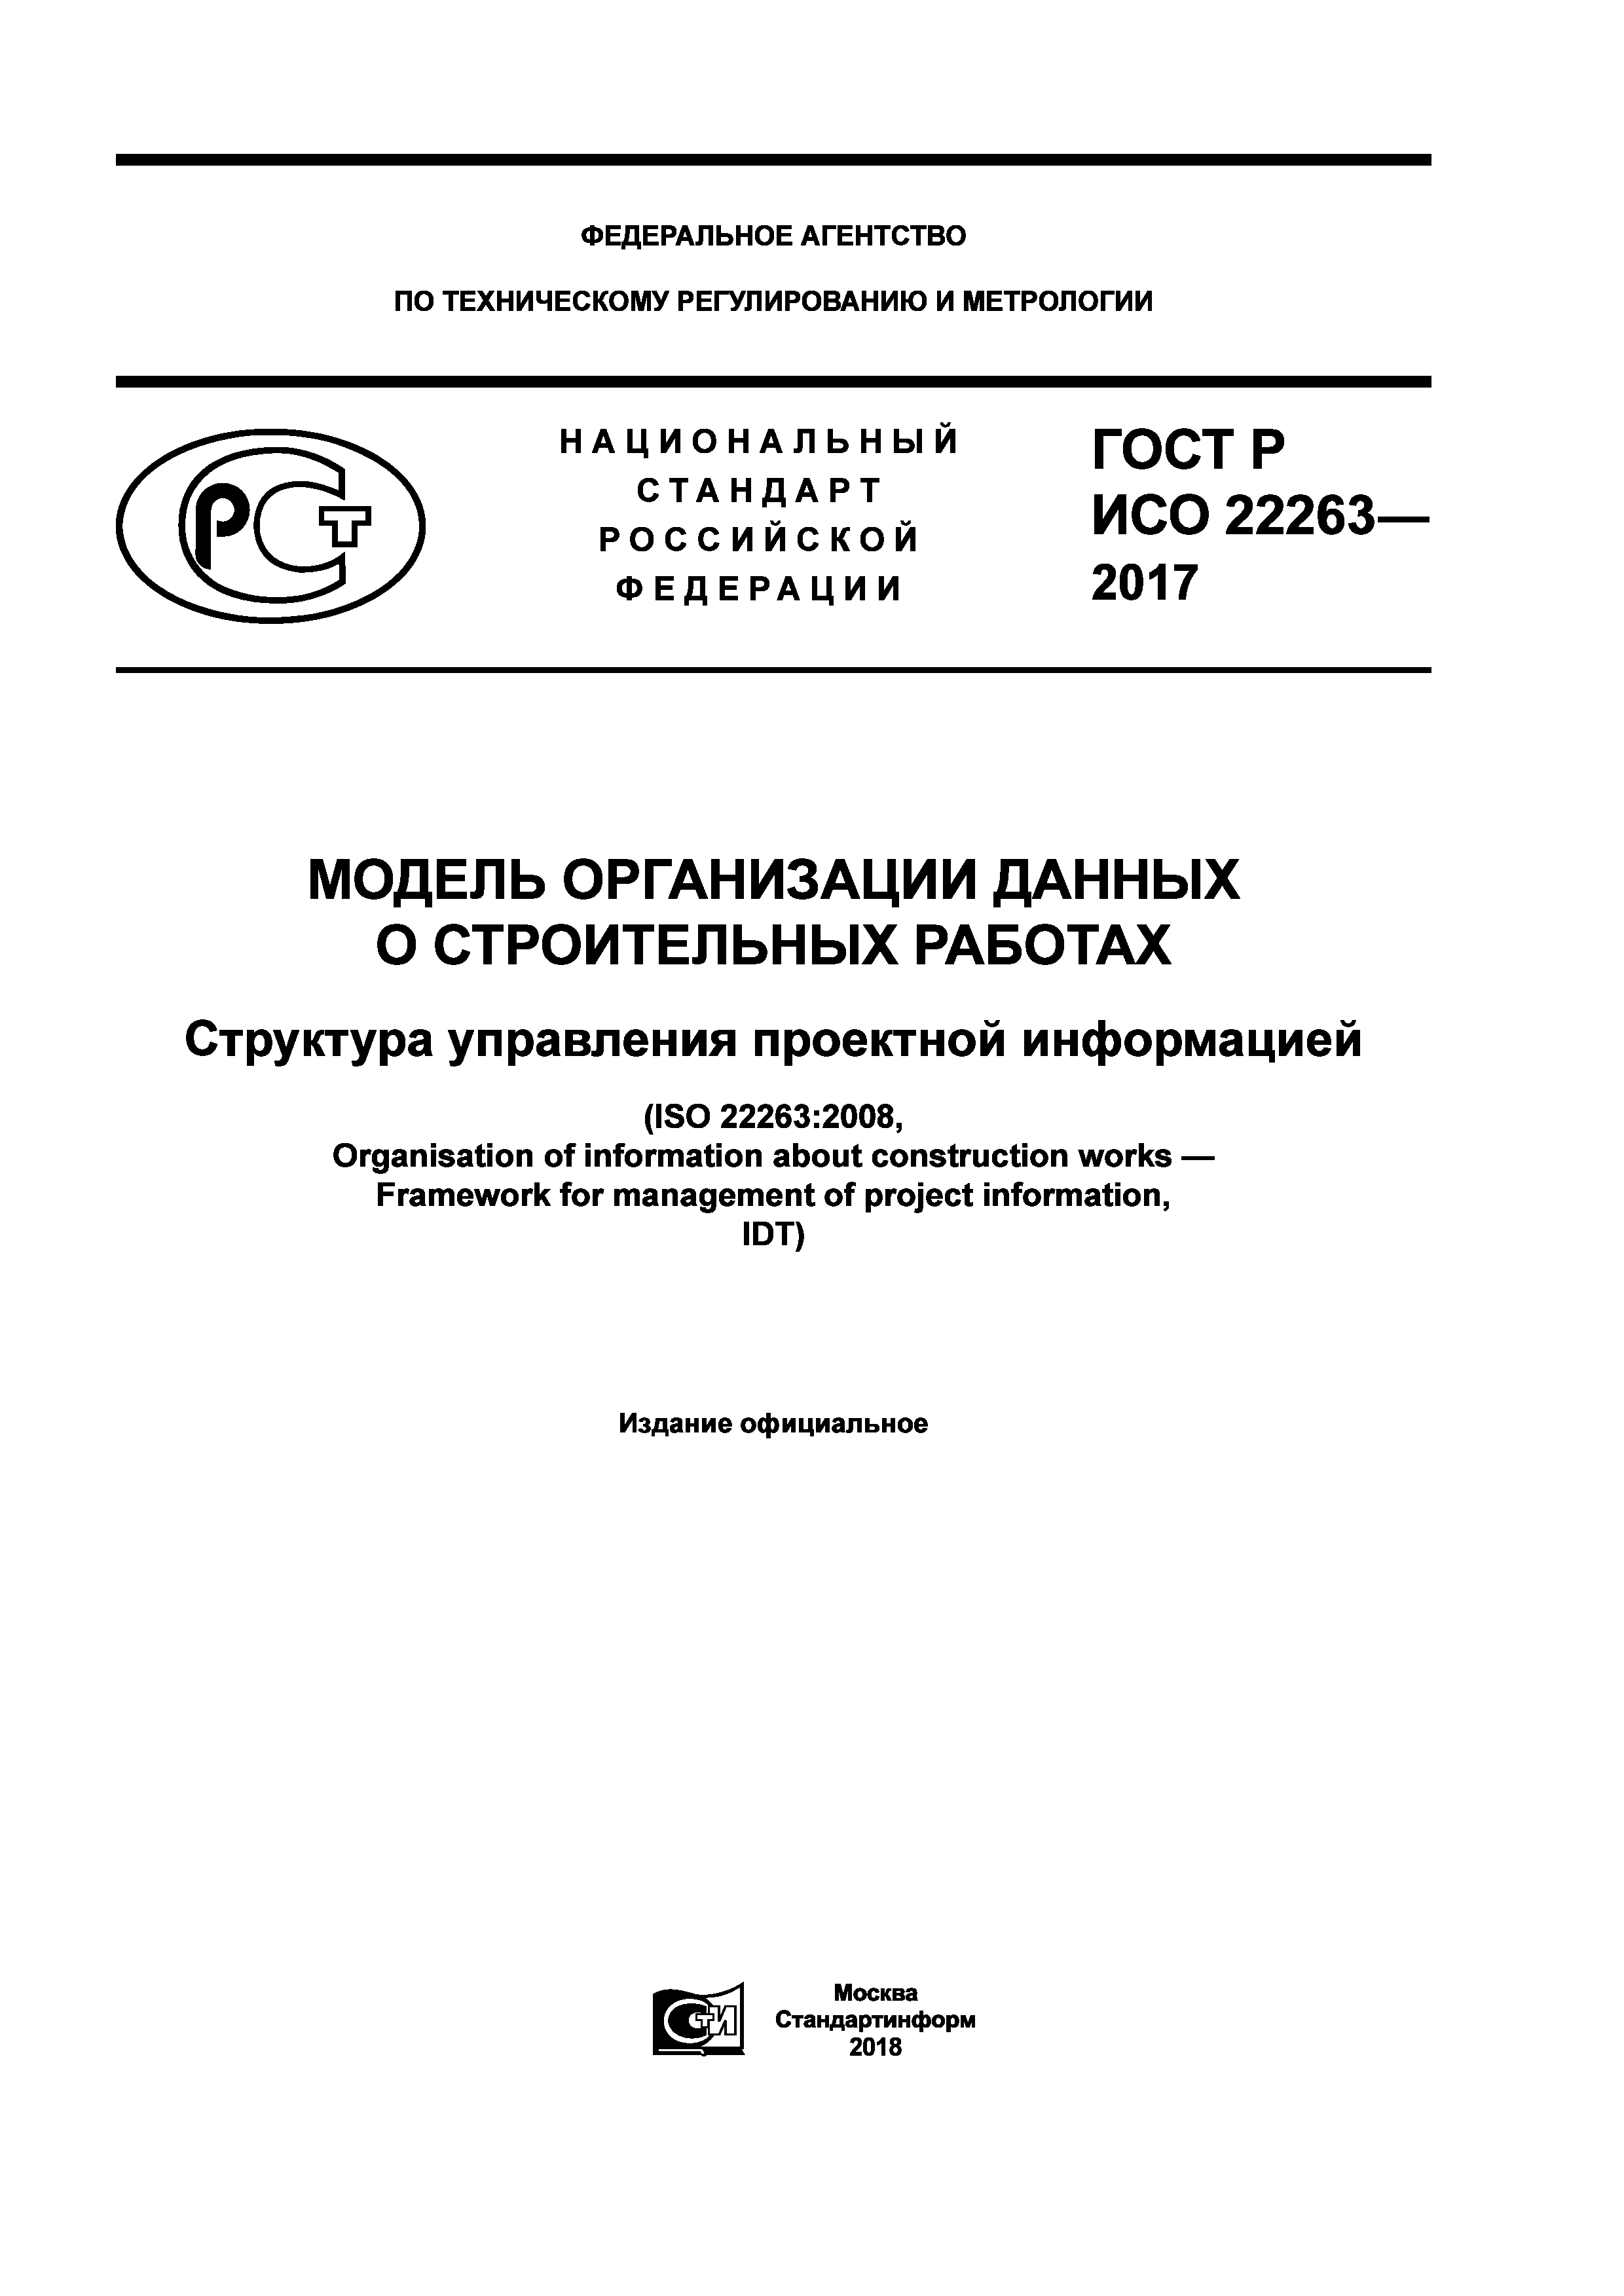 ГОСТ Р ИСО 22263-2017